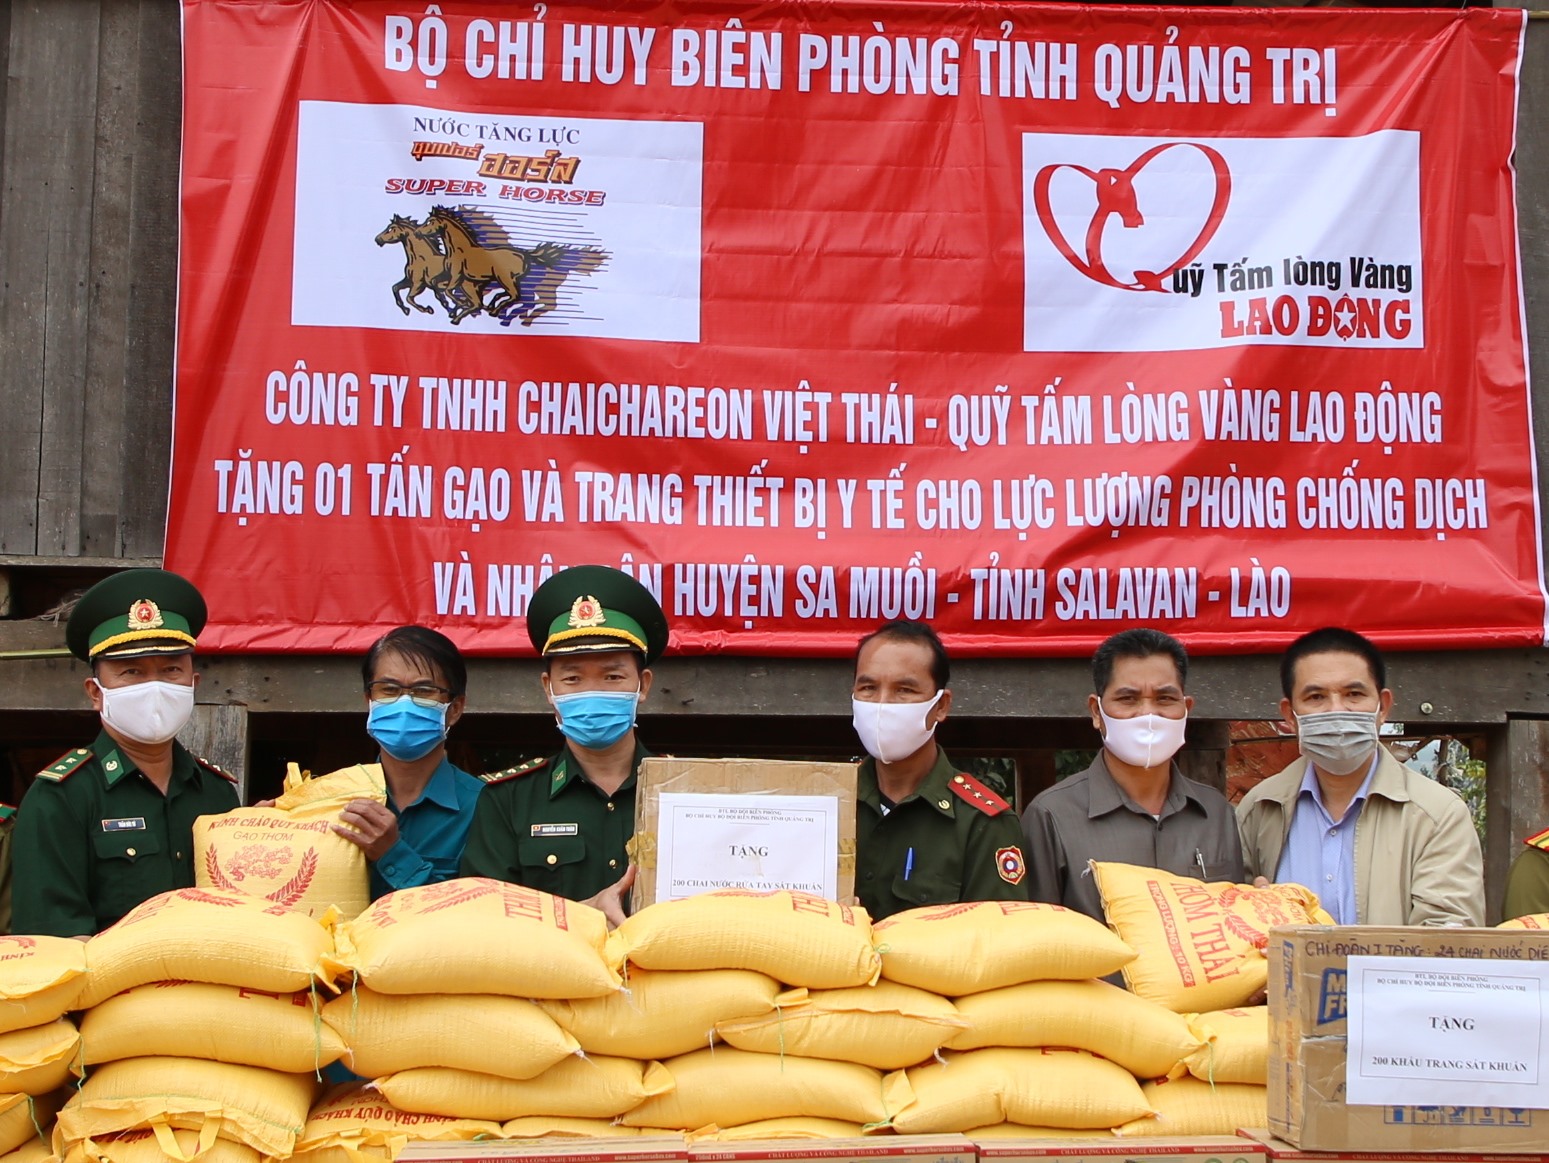 Biên phòng Quảng Trị và Quỹ Tấm lòng Vàng Lao Động hỗ trợ gạo, trang thiết bị y tế cho người dân, lực lượng bảo vệ biên giới nước Lào. Ảnh: Hưng Thơ.